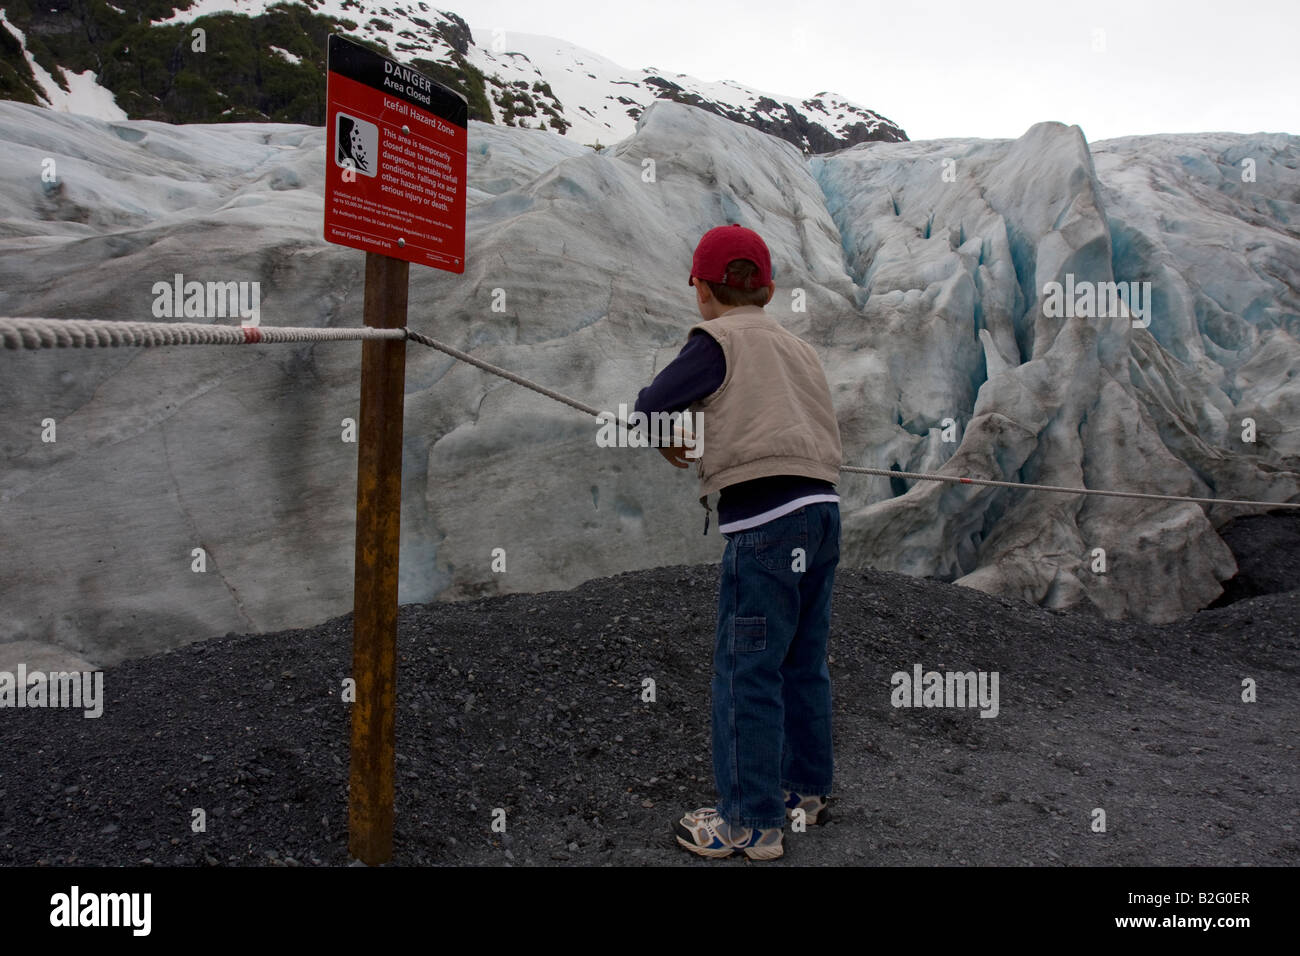 Mantener fuera de peligro salir signo delante del glaciar, parte de la harding Icefield, dentro del Parque Nacional de los fiordos de Kenai, Seward, Alaska Foto de stock